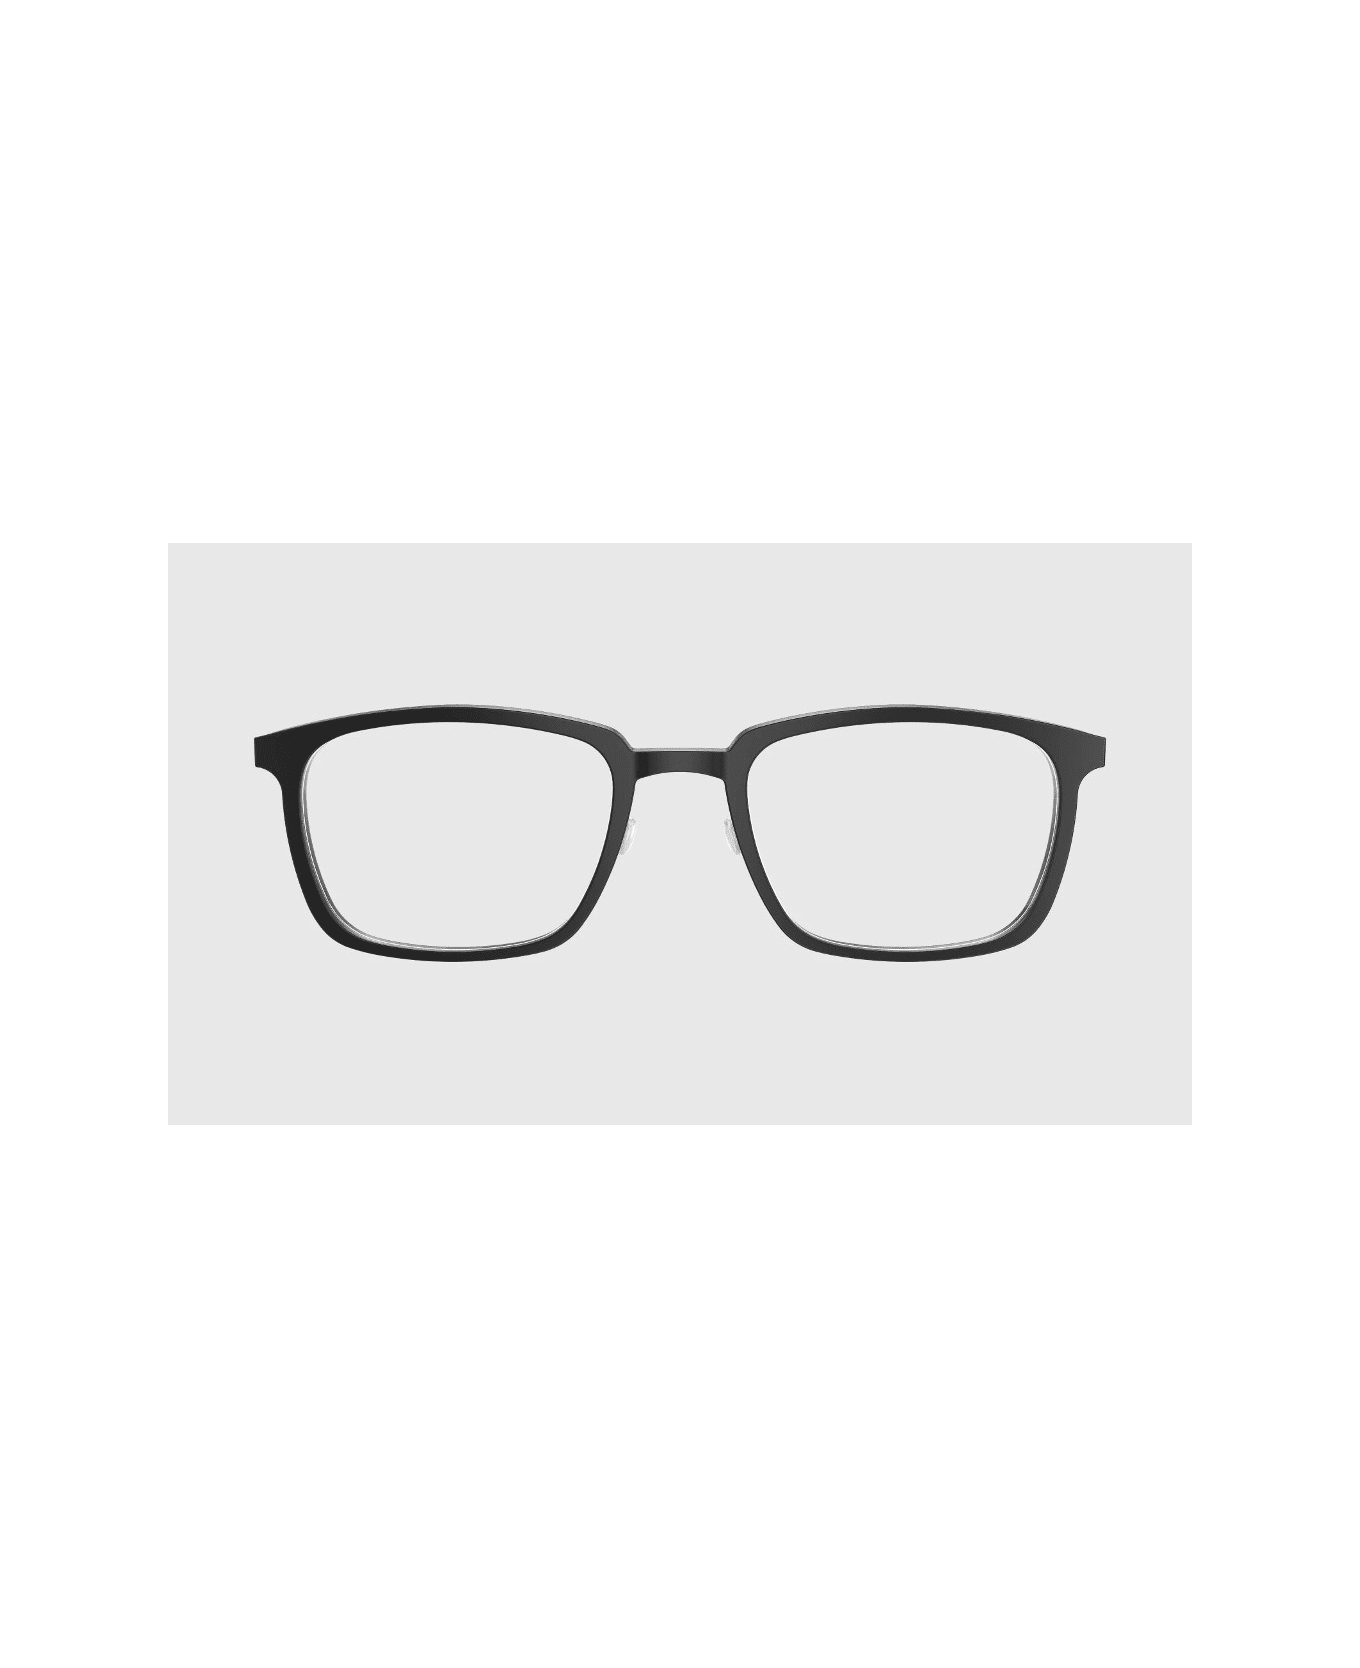 LINDBERG ACE 1231 Glasses アイウェア